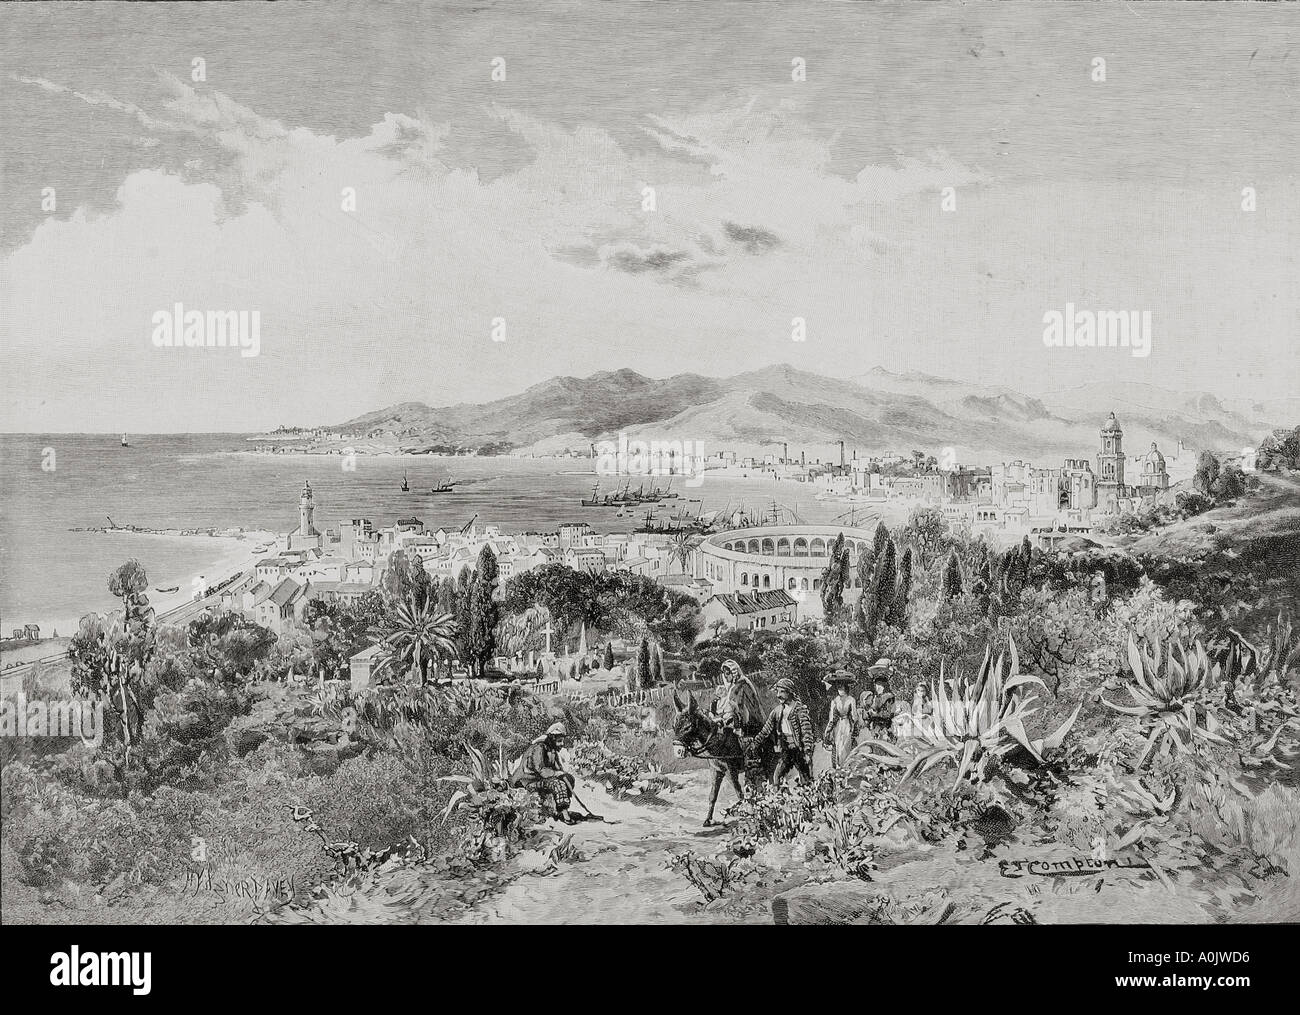 Malaga, Spagna, guardando ad ovest circa 1890 da Edward T Compton, 1849 - 1921. Foto Stock